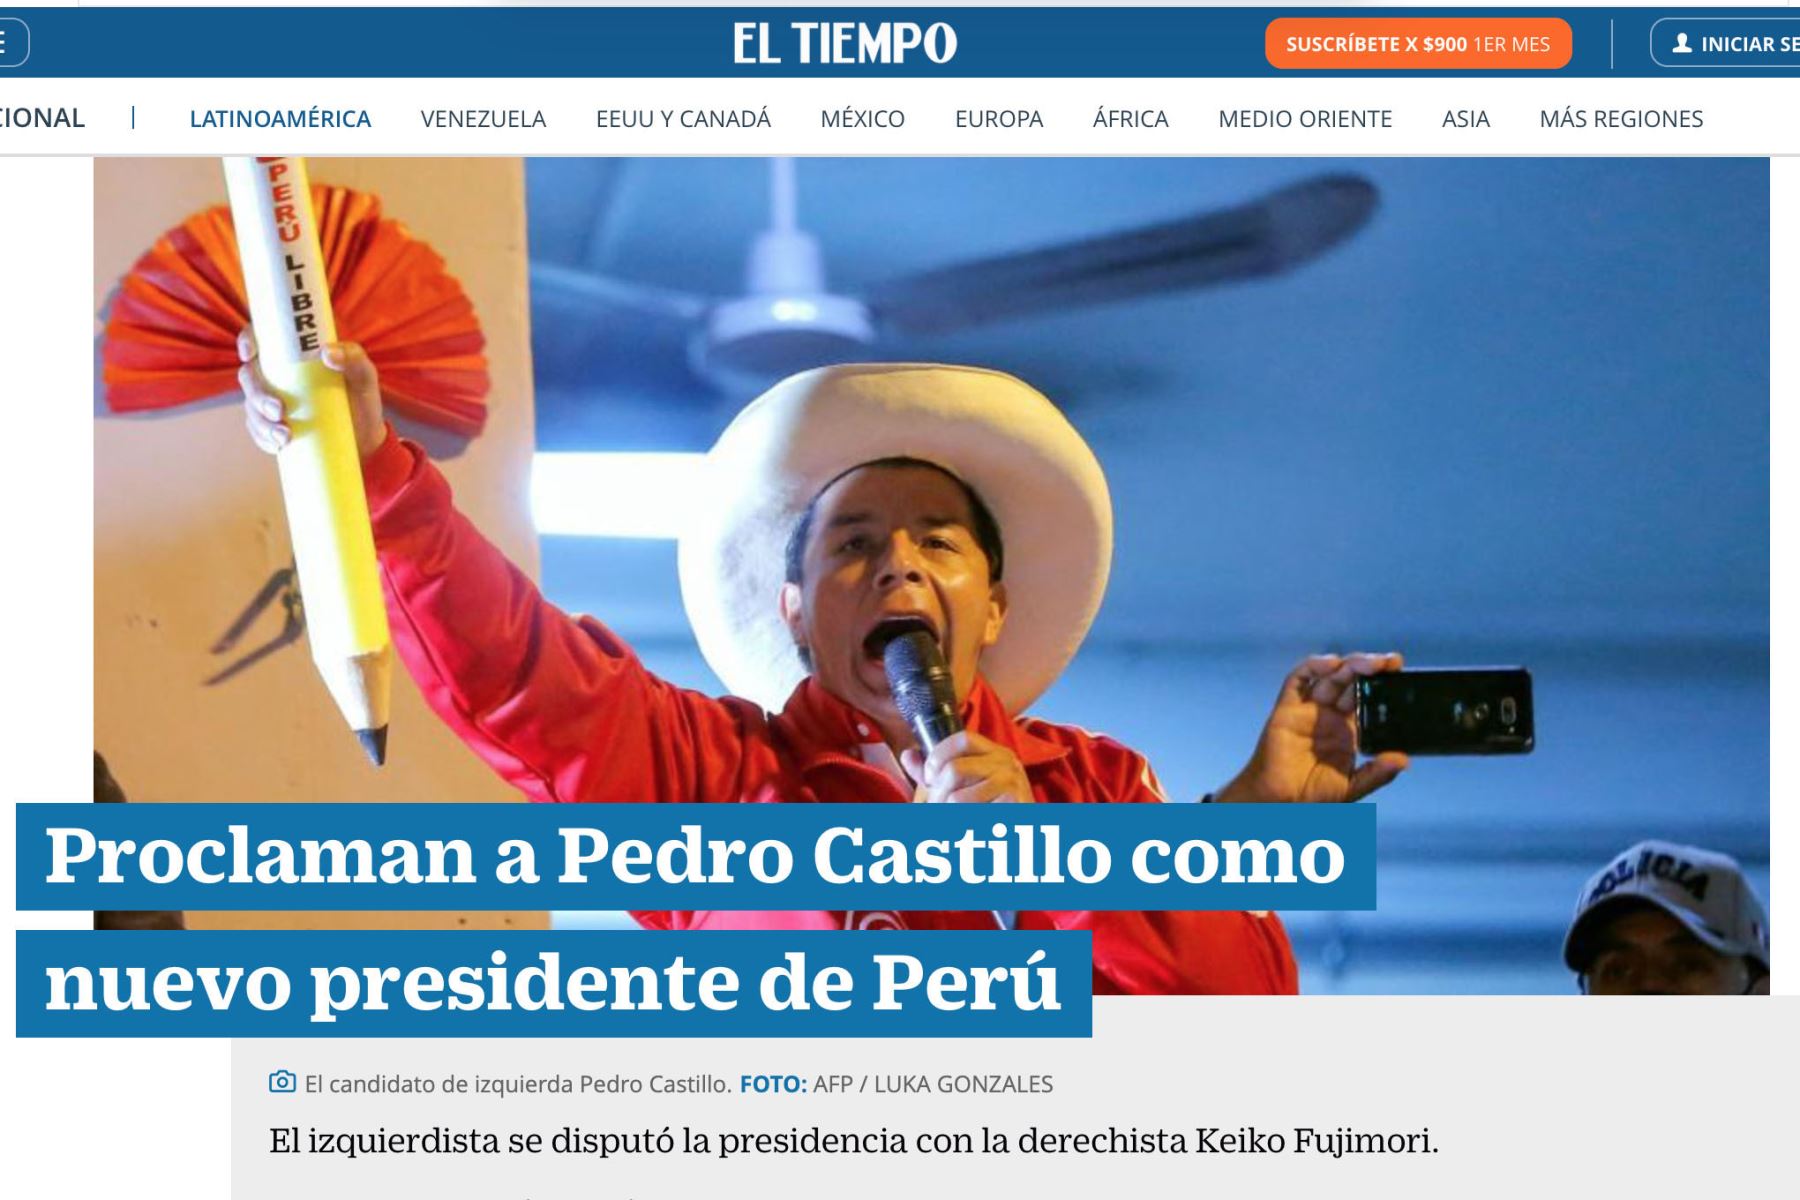 Portada del diario El Tiempo. Diarios del mundo, informan sobre la proclamación del presidente electo Pedro Castillo.
Foto: Captura TV